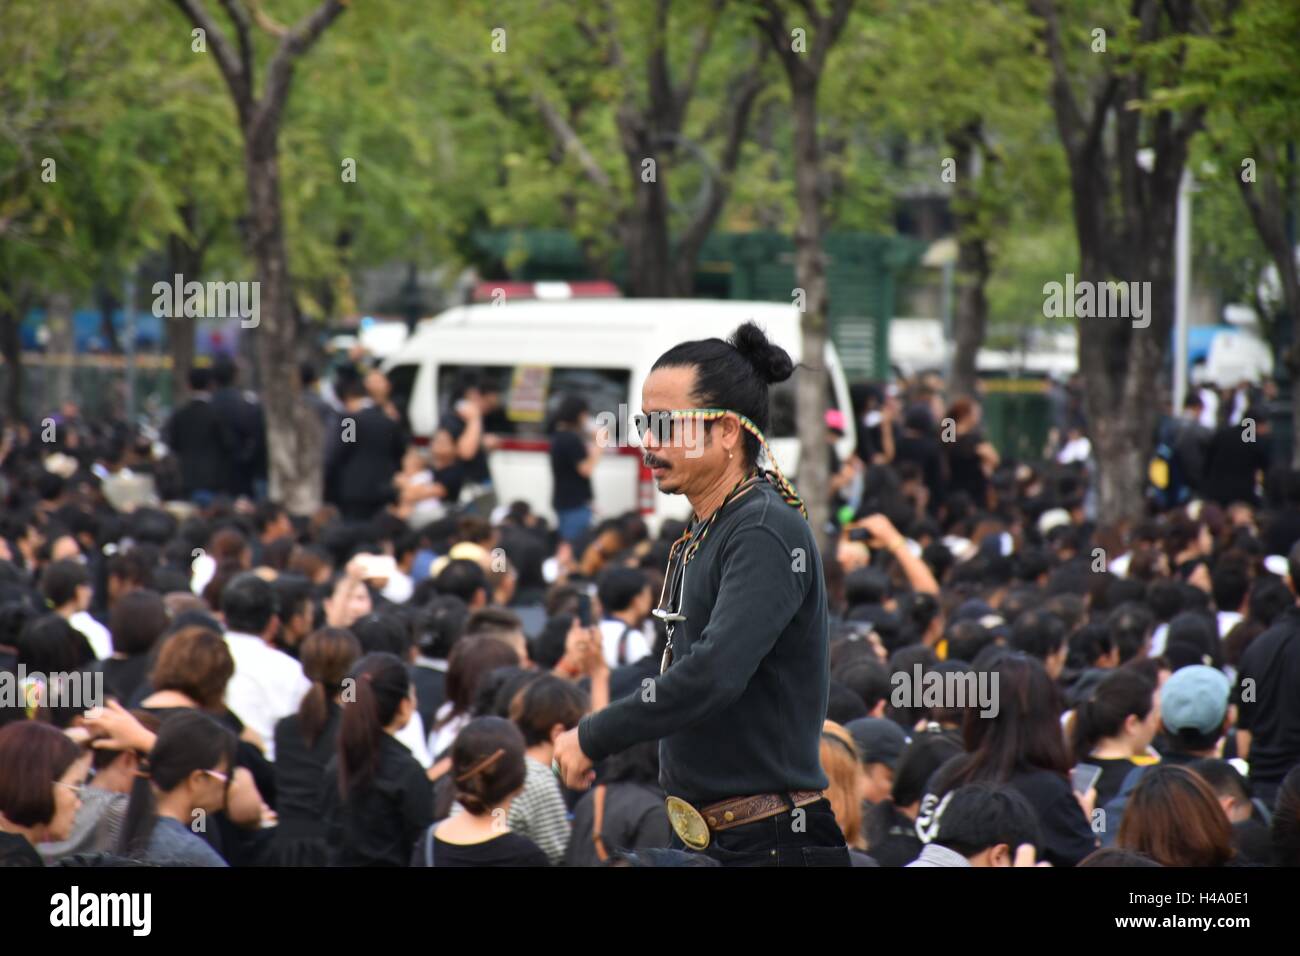 Bangkok, Tailandia. 14 ottobre, 2016. Le persone si radunano presso il palazzo dei re di pagare il rispetto per il re. Credito:.rmf image/Alamy Live News. Foto Stock